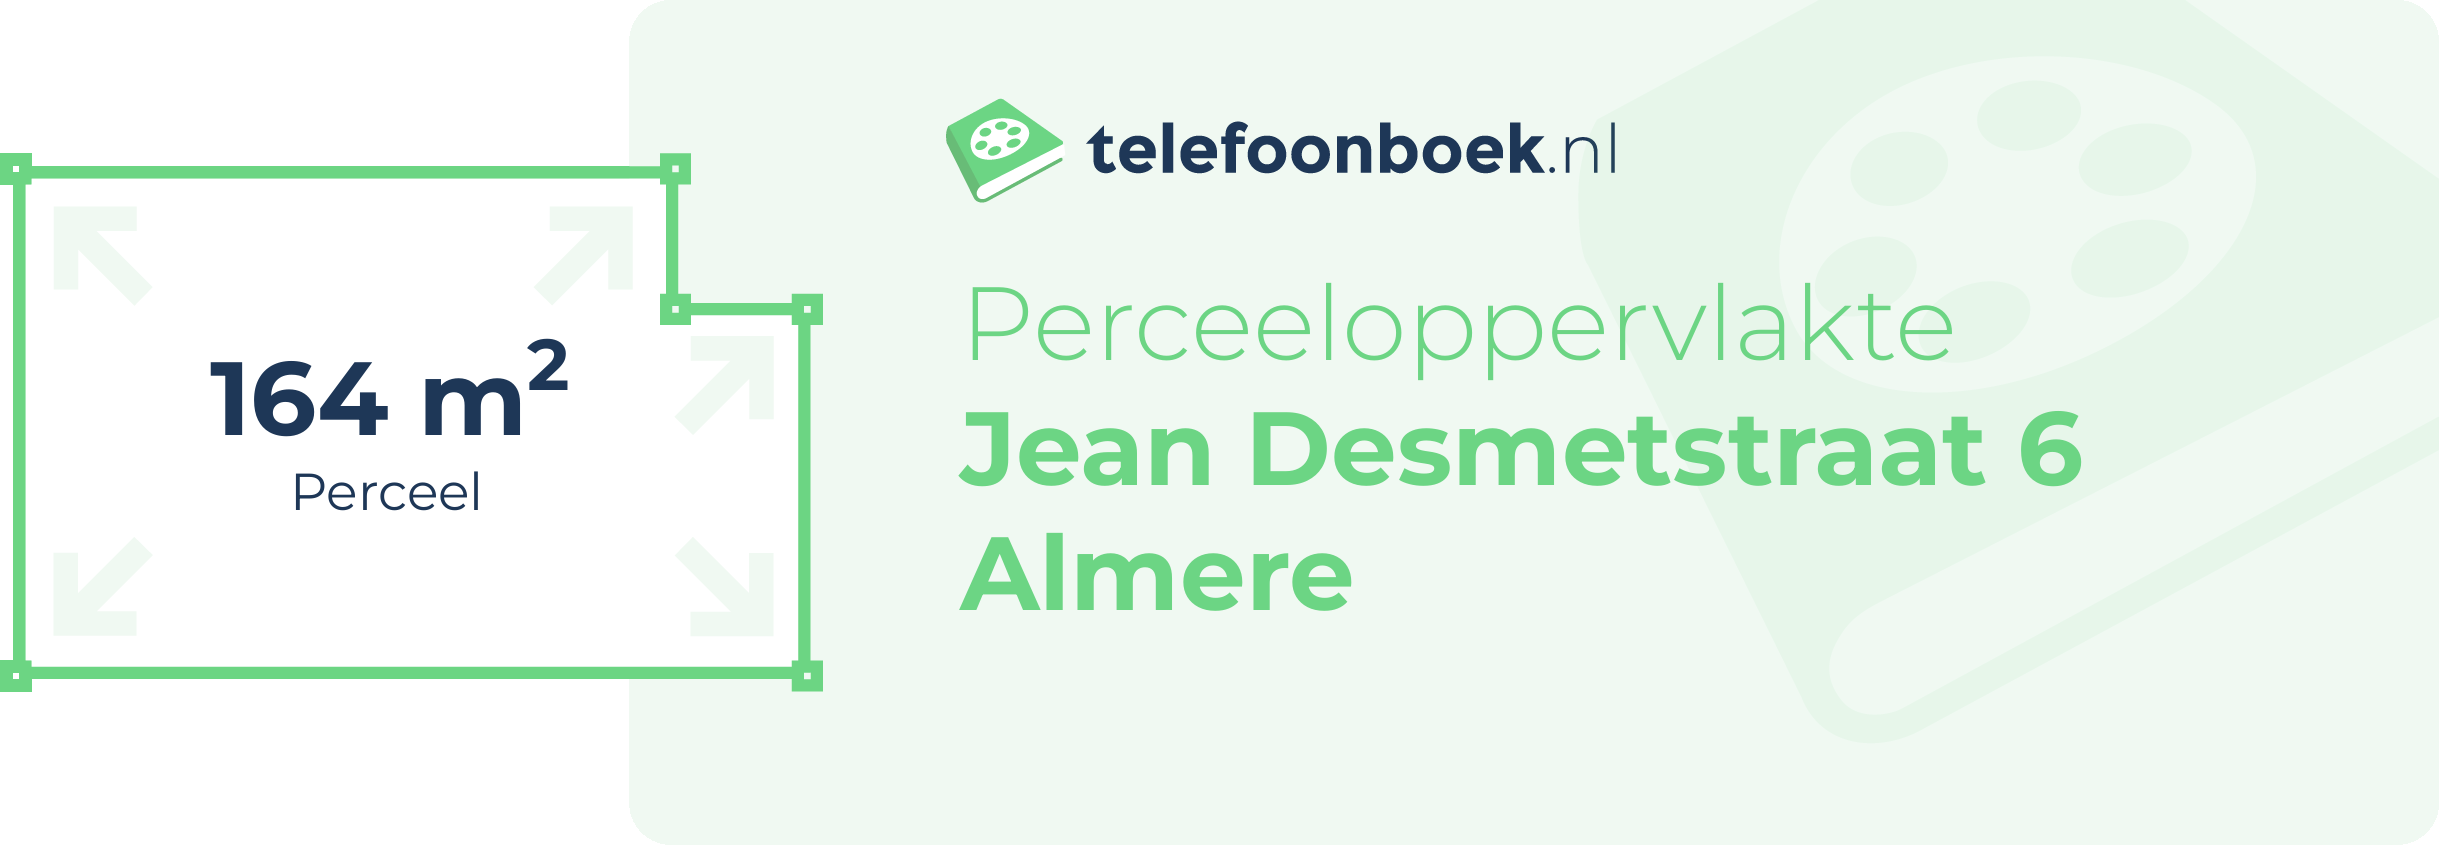 Perceeloppervlakte Jean Desmetstraat 6 Almere